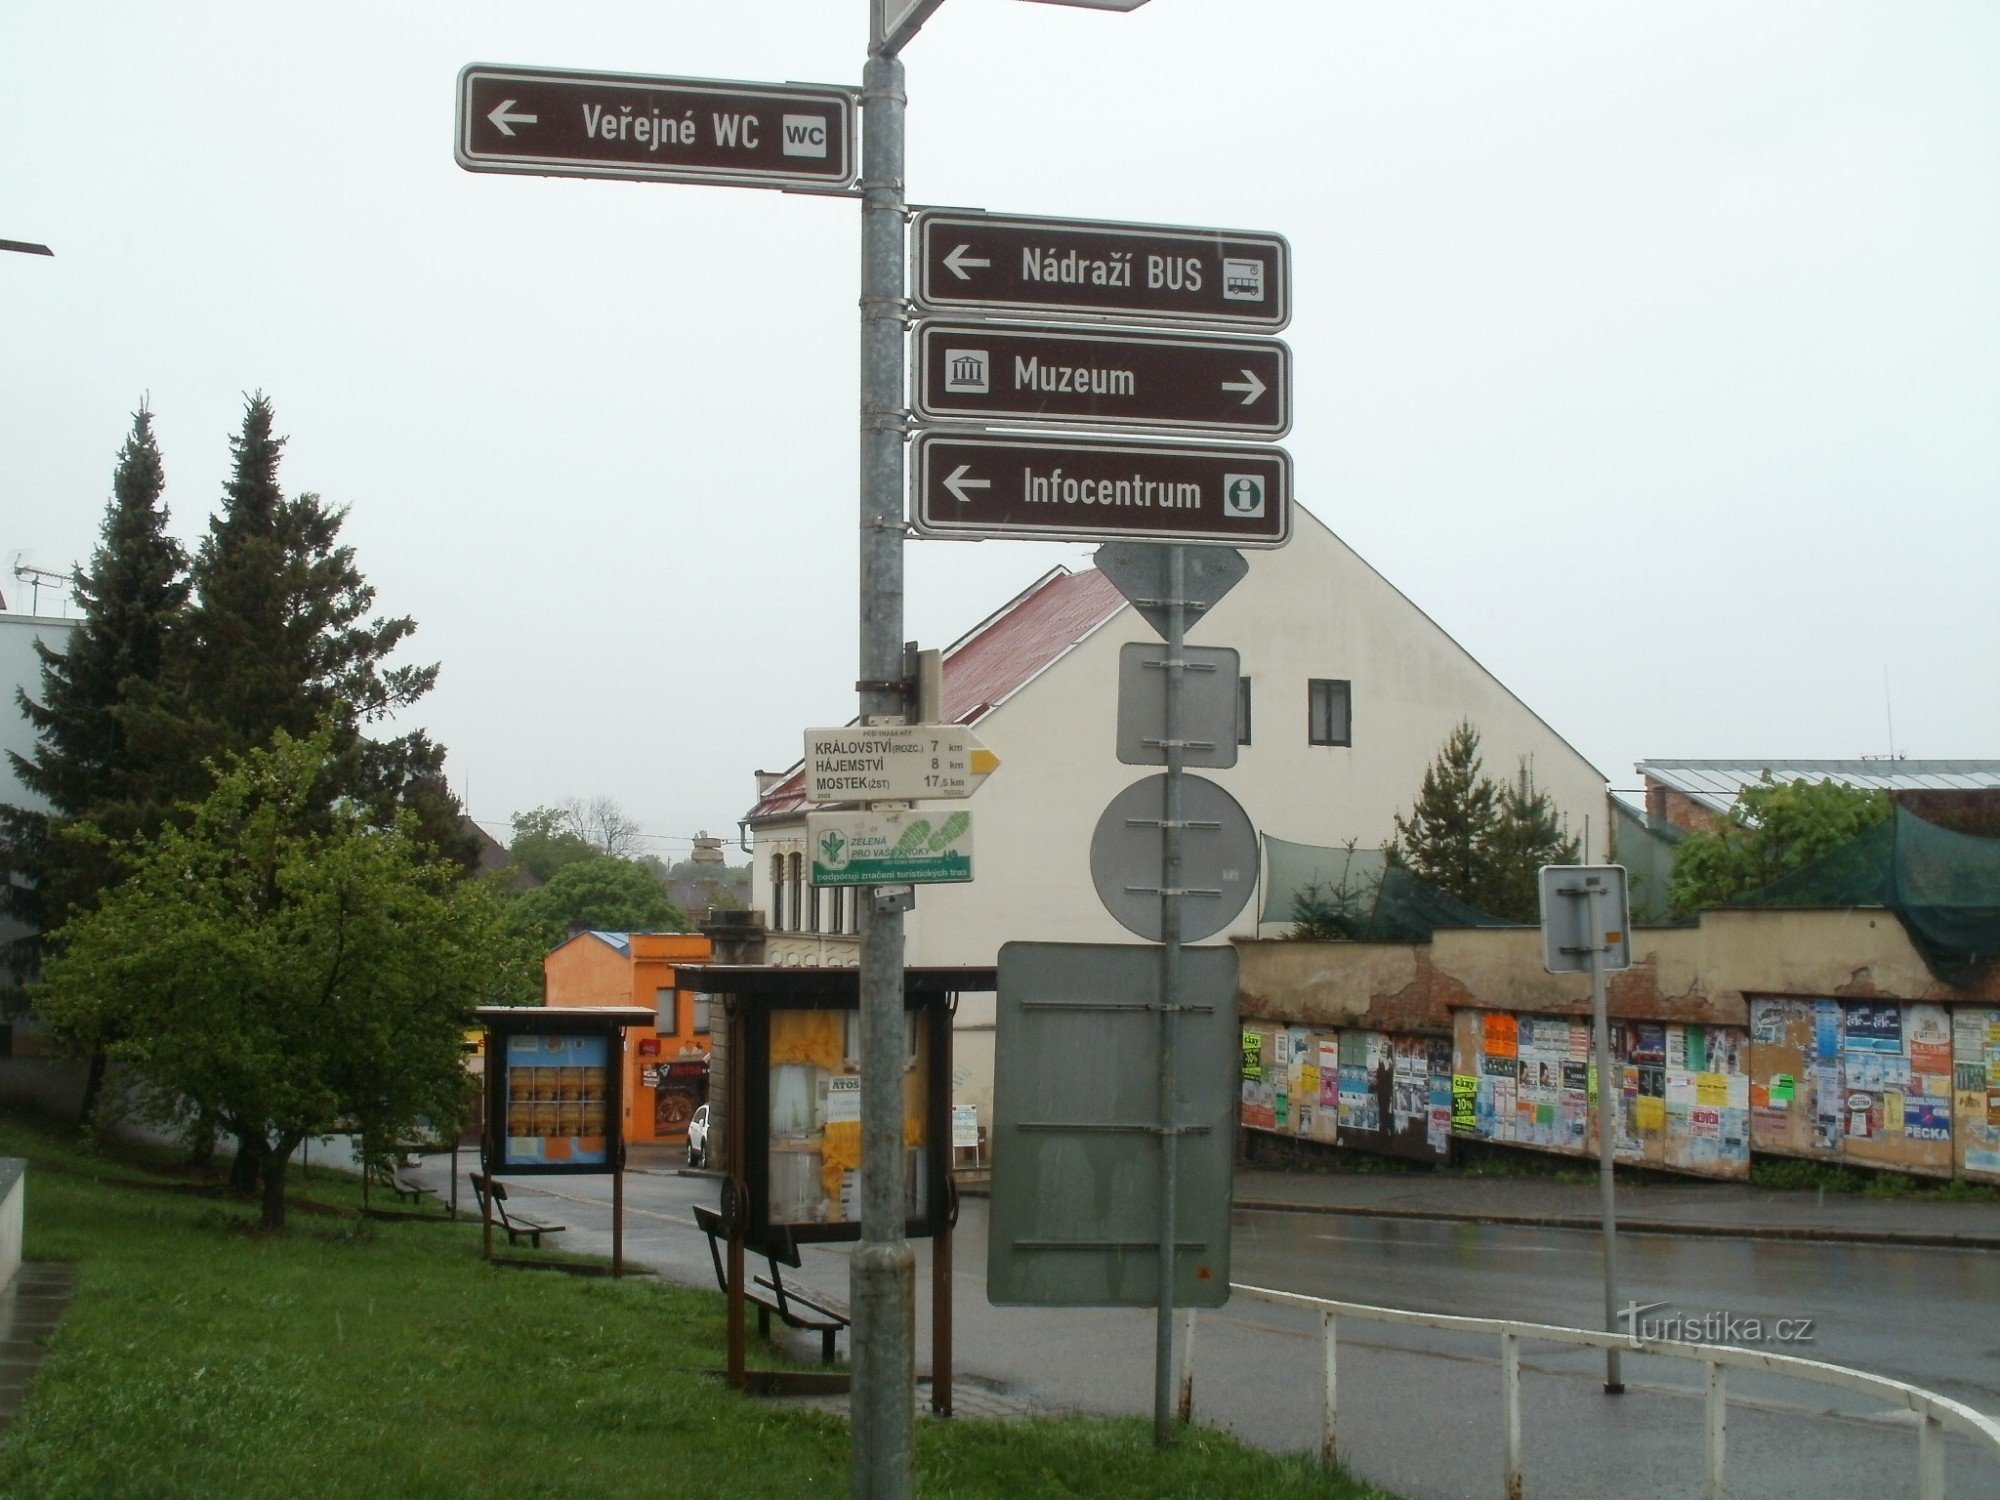 τουριστικό σταυροδρόμι Dvur Králové - κέντρο